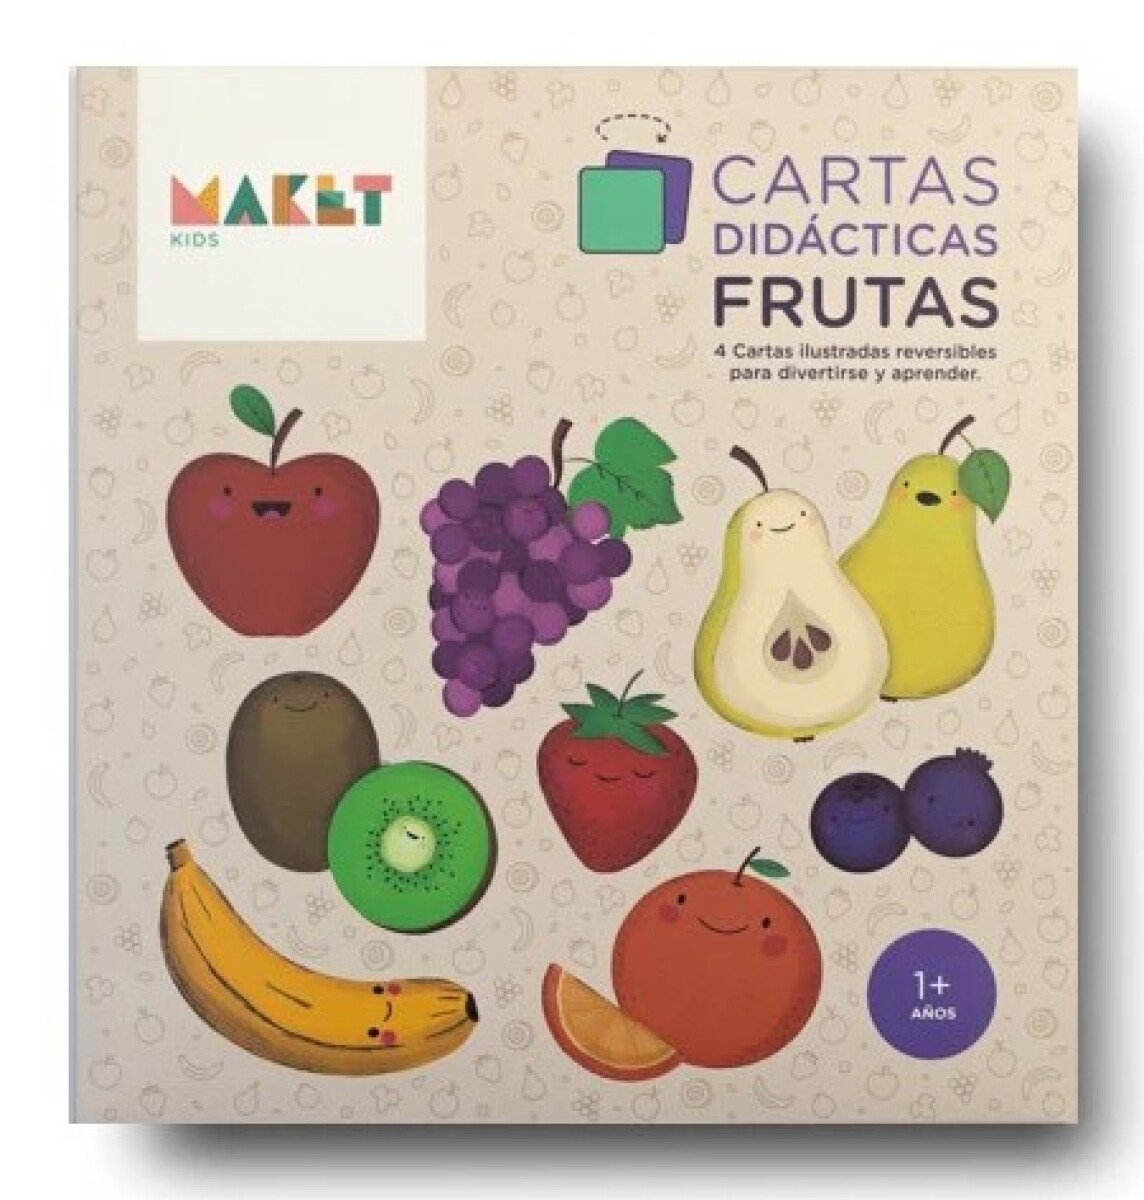 Cartas didácticas - Frutas 